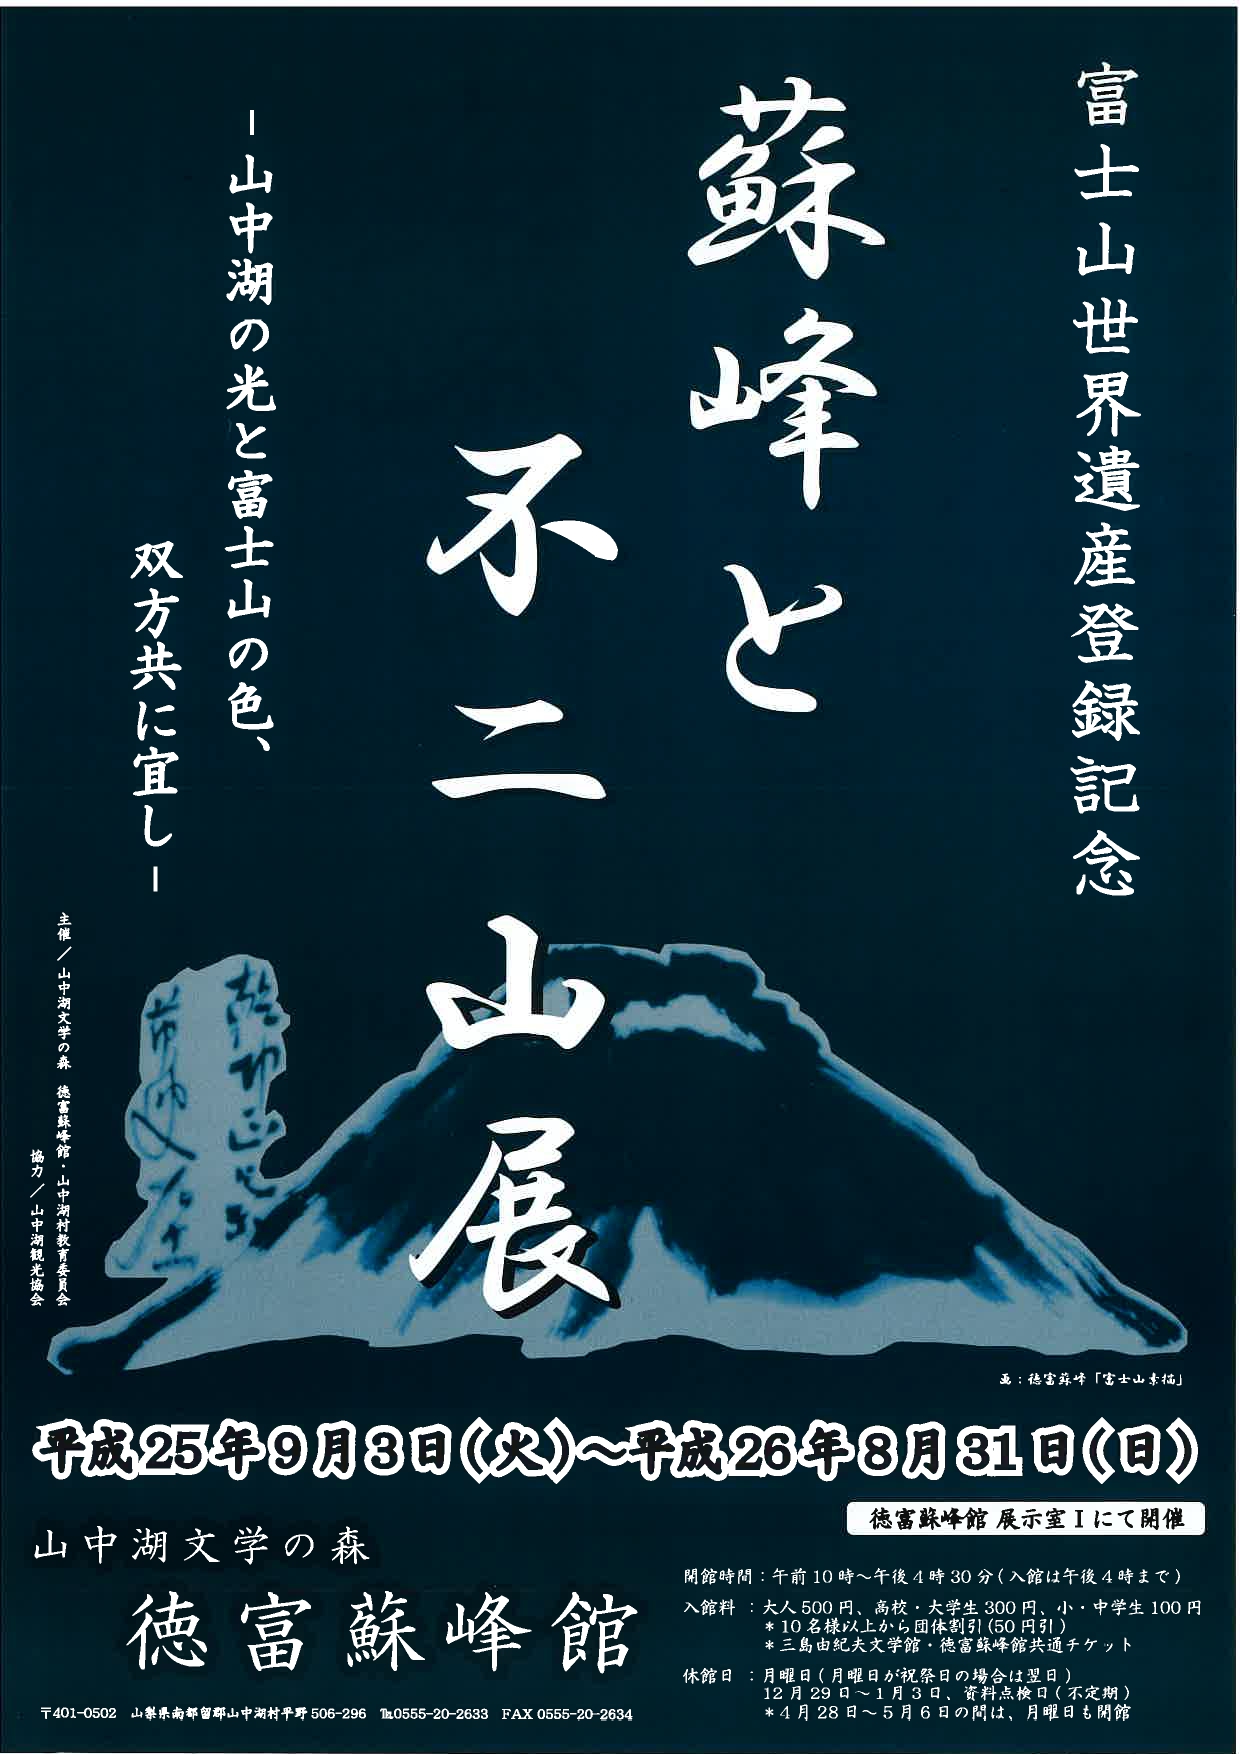 富士山世界遺産登録記念「蘇峰と不二山展」 | 三島由紀夫文学館